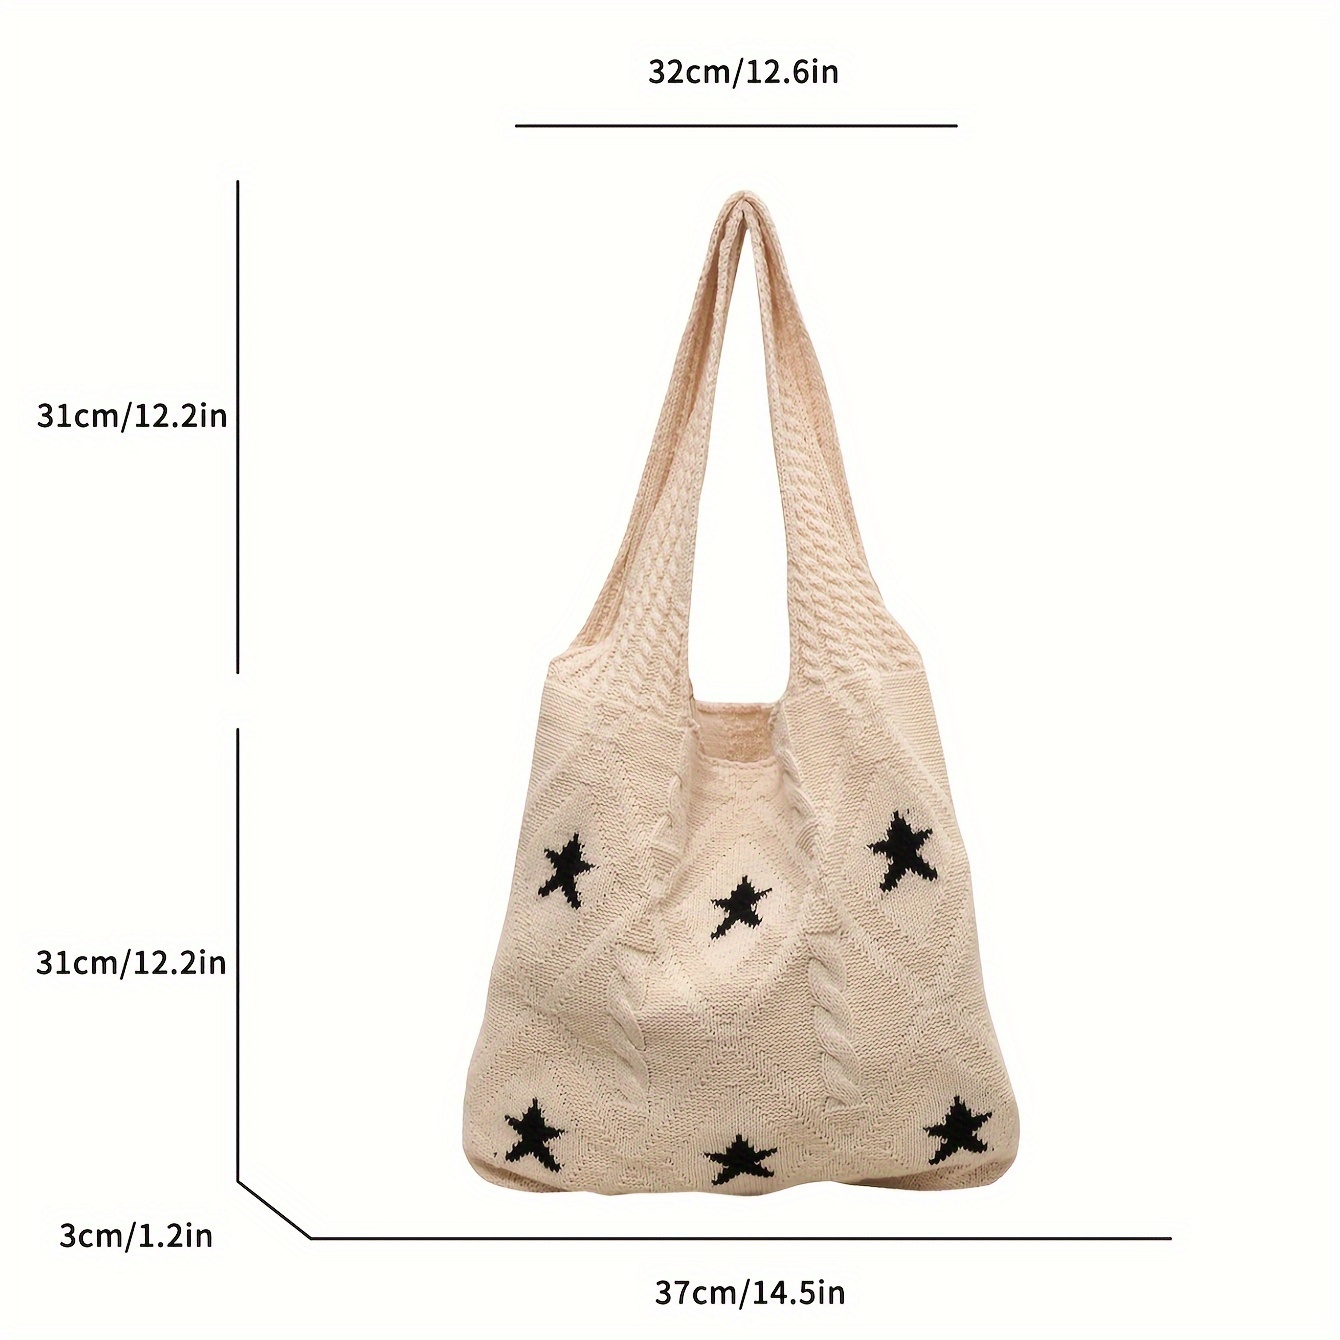 star pattern knitted tote bag aesthetic crochet bag for women retro woven shoulder bag for travel beach